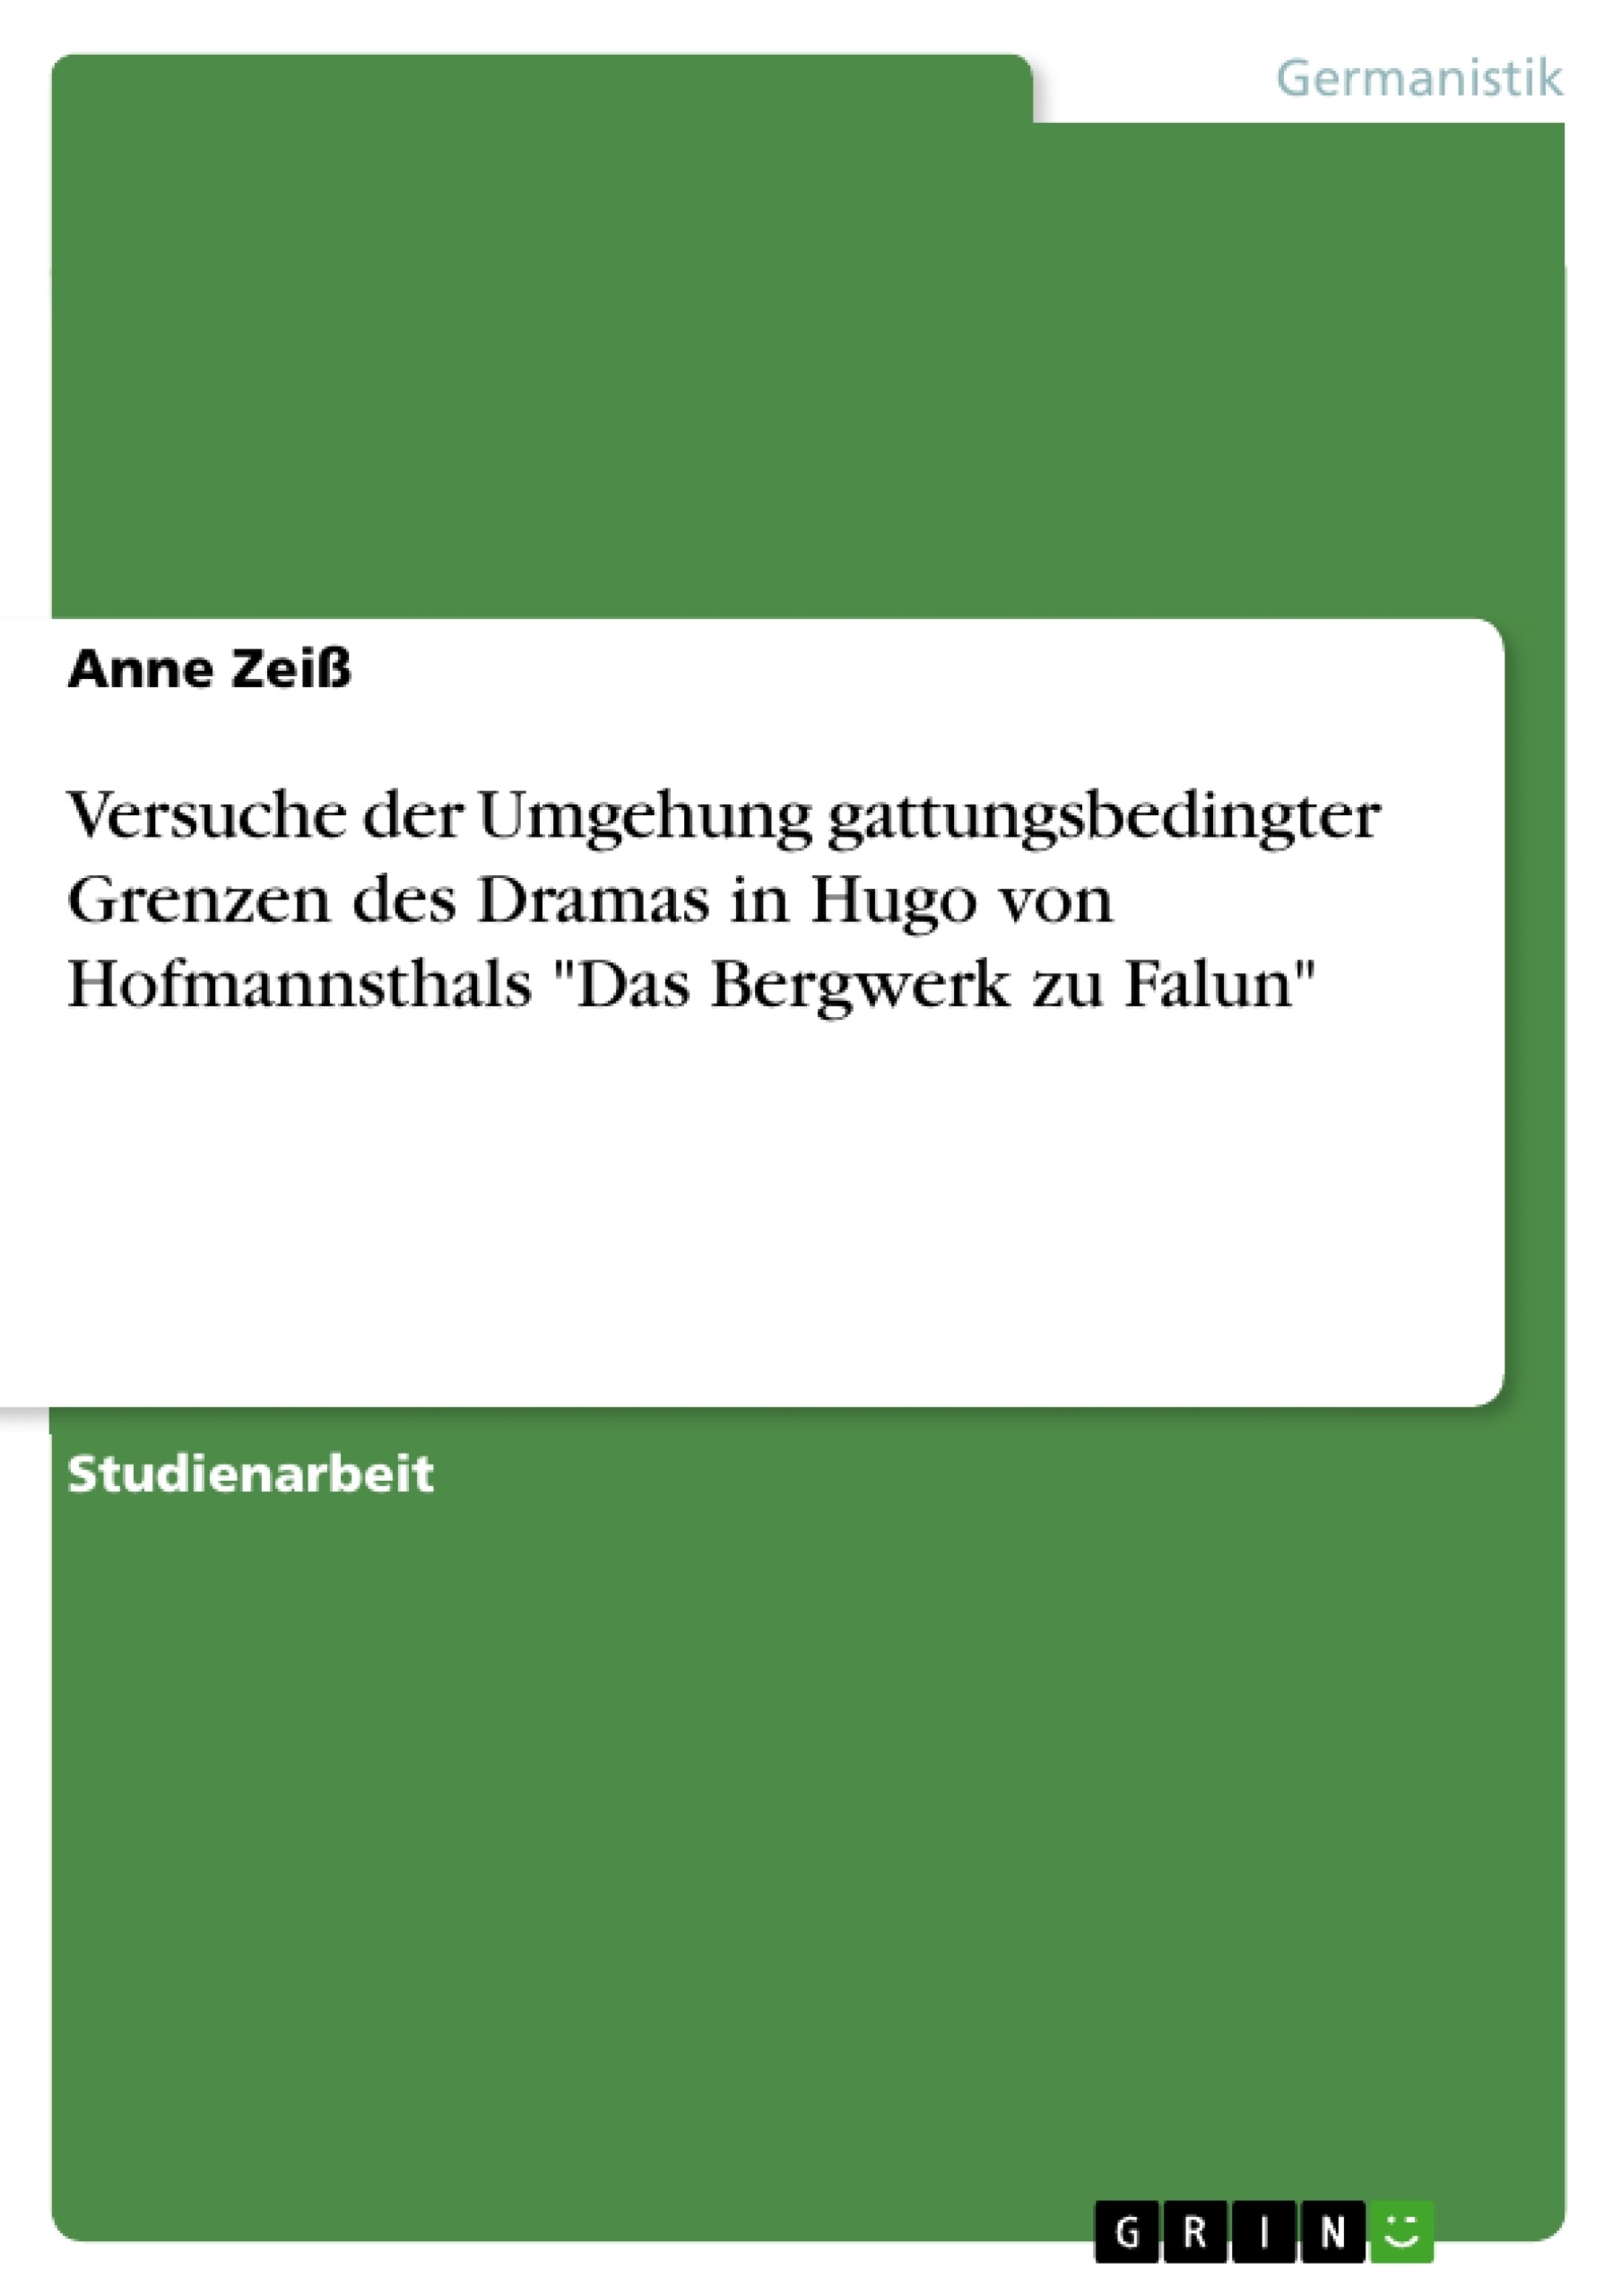 Title: Versuche der Umgehung gattungsbedingter Grenzen des Dramas in Hugo von Hofmannsthals "Das Bergwerk zu Falun"